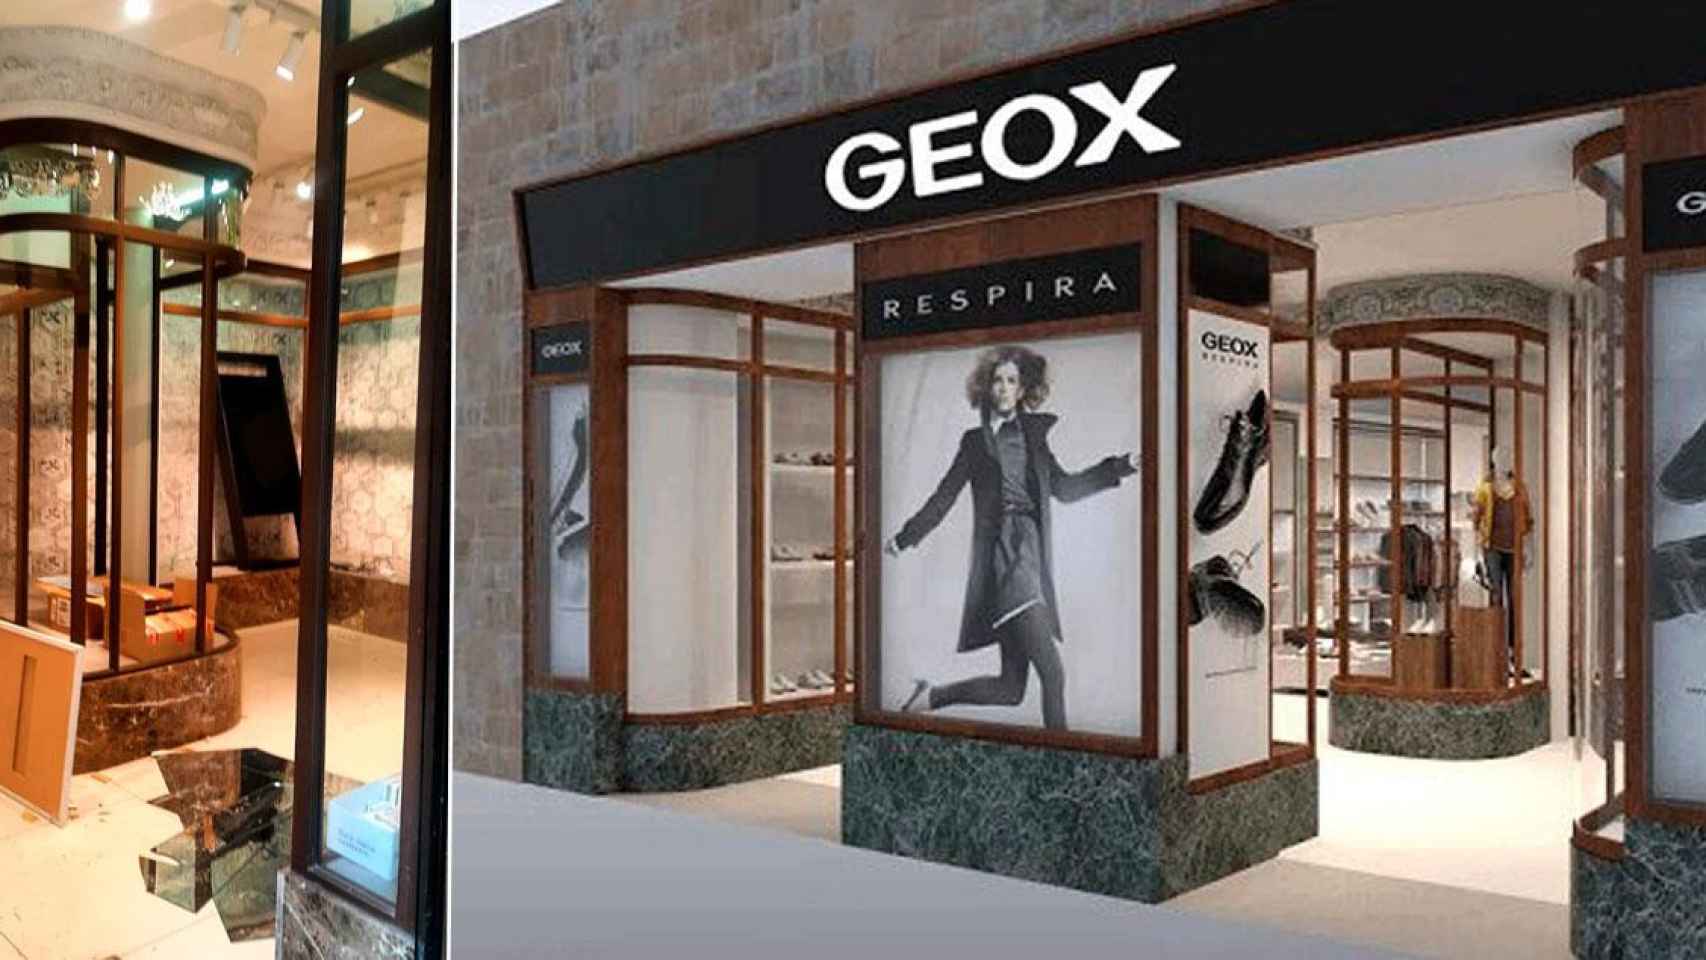 Geox sucumbe al Covid y cierra su mejor tienda Barcelona